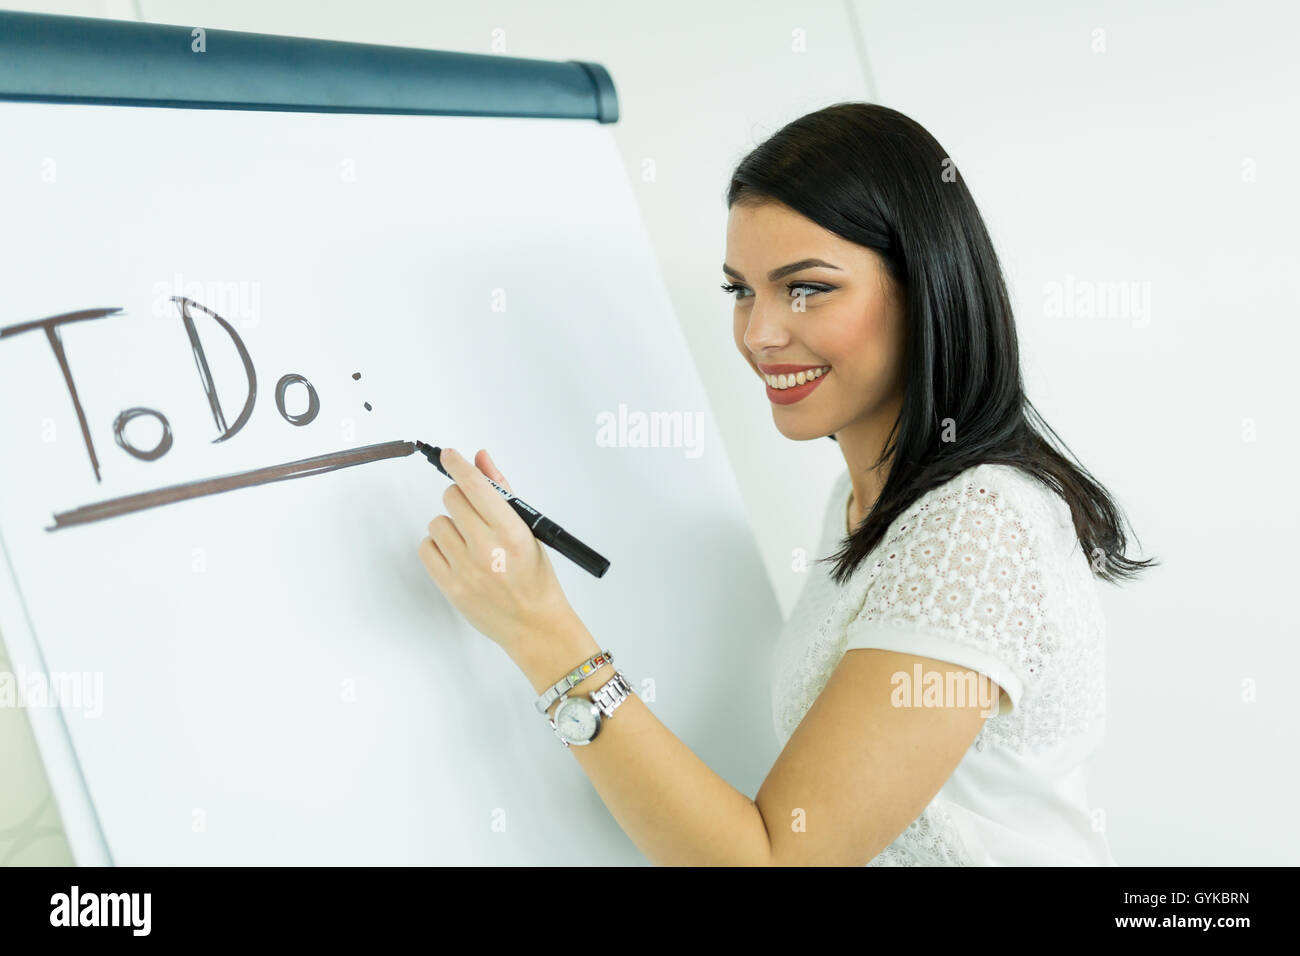 Schön, jung, Geschäftsfrau schreiben Todo auf einem weißen Schreibtafel Stockfoto